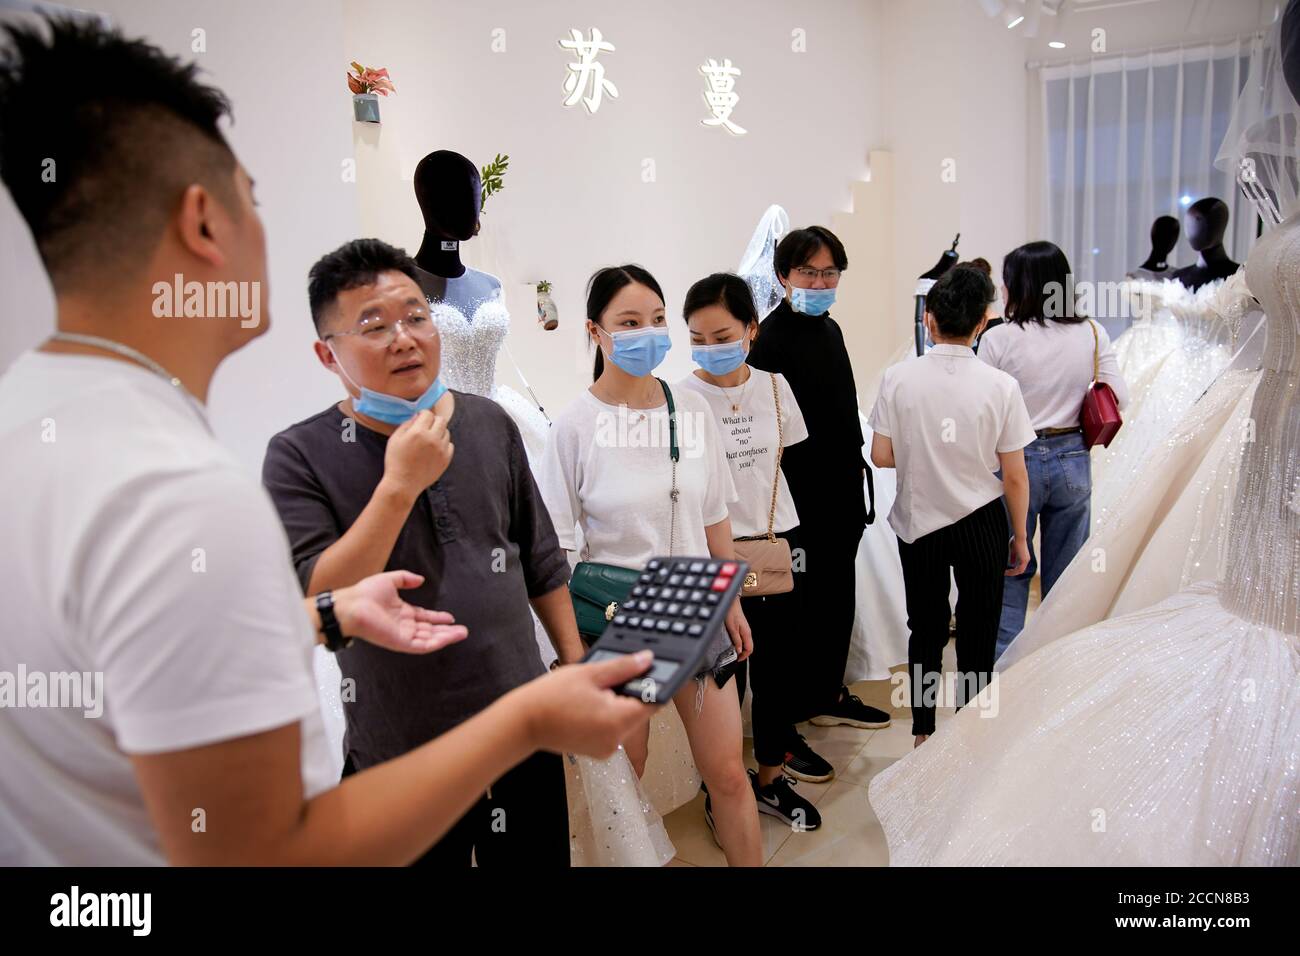 Mayoristas en china fotografías e imágenes de alta resolución - Alamy